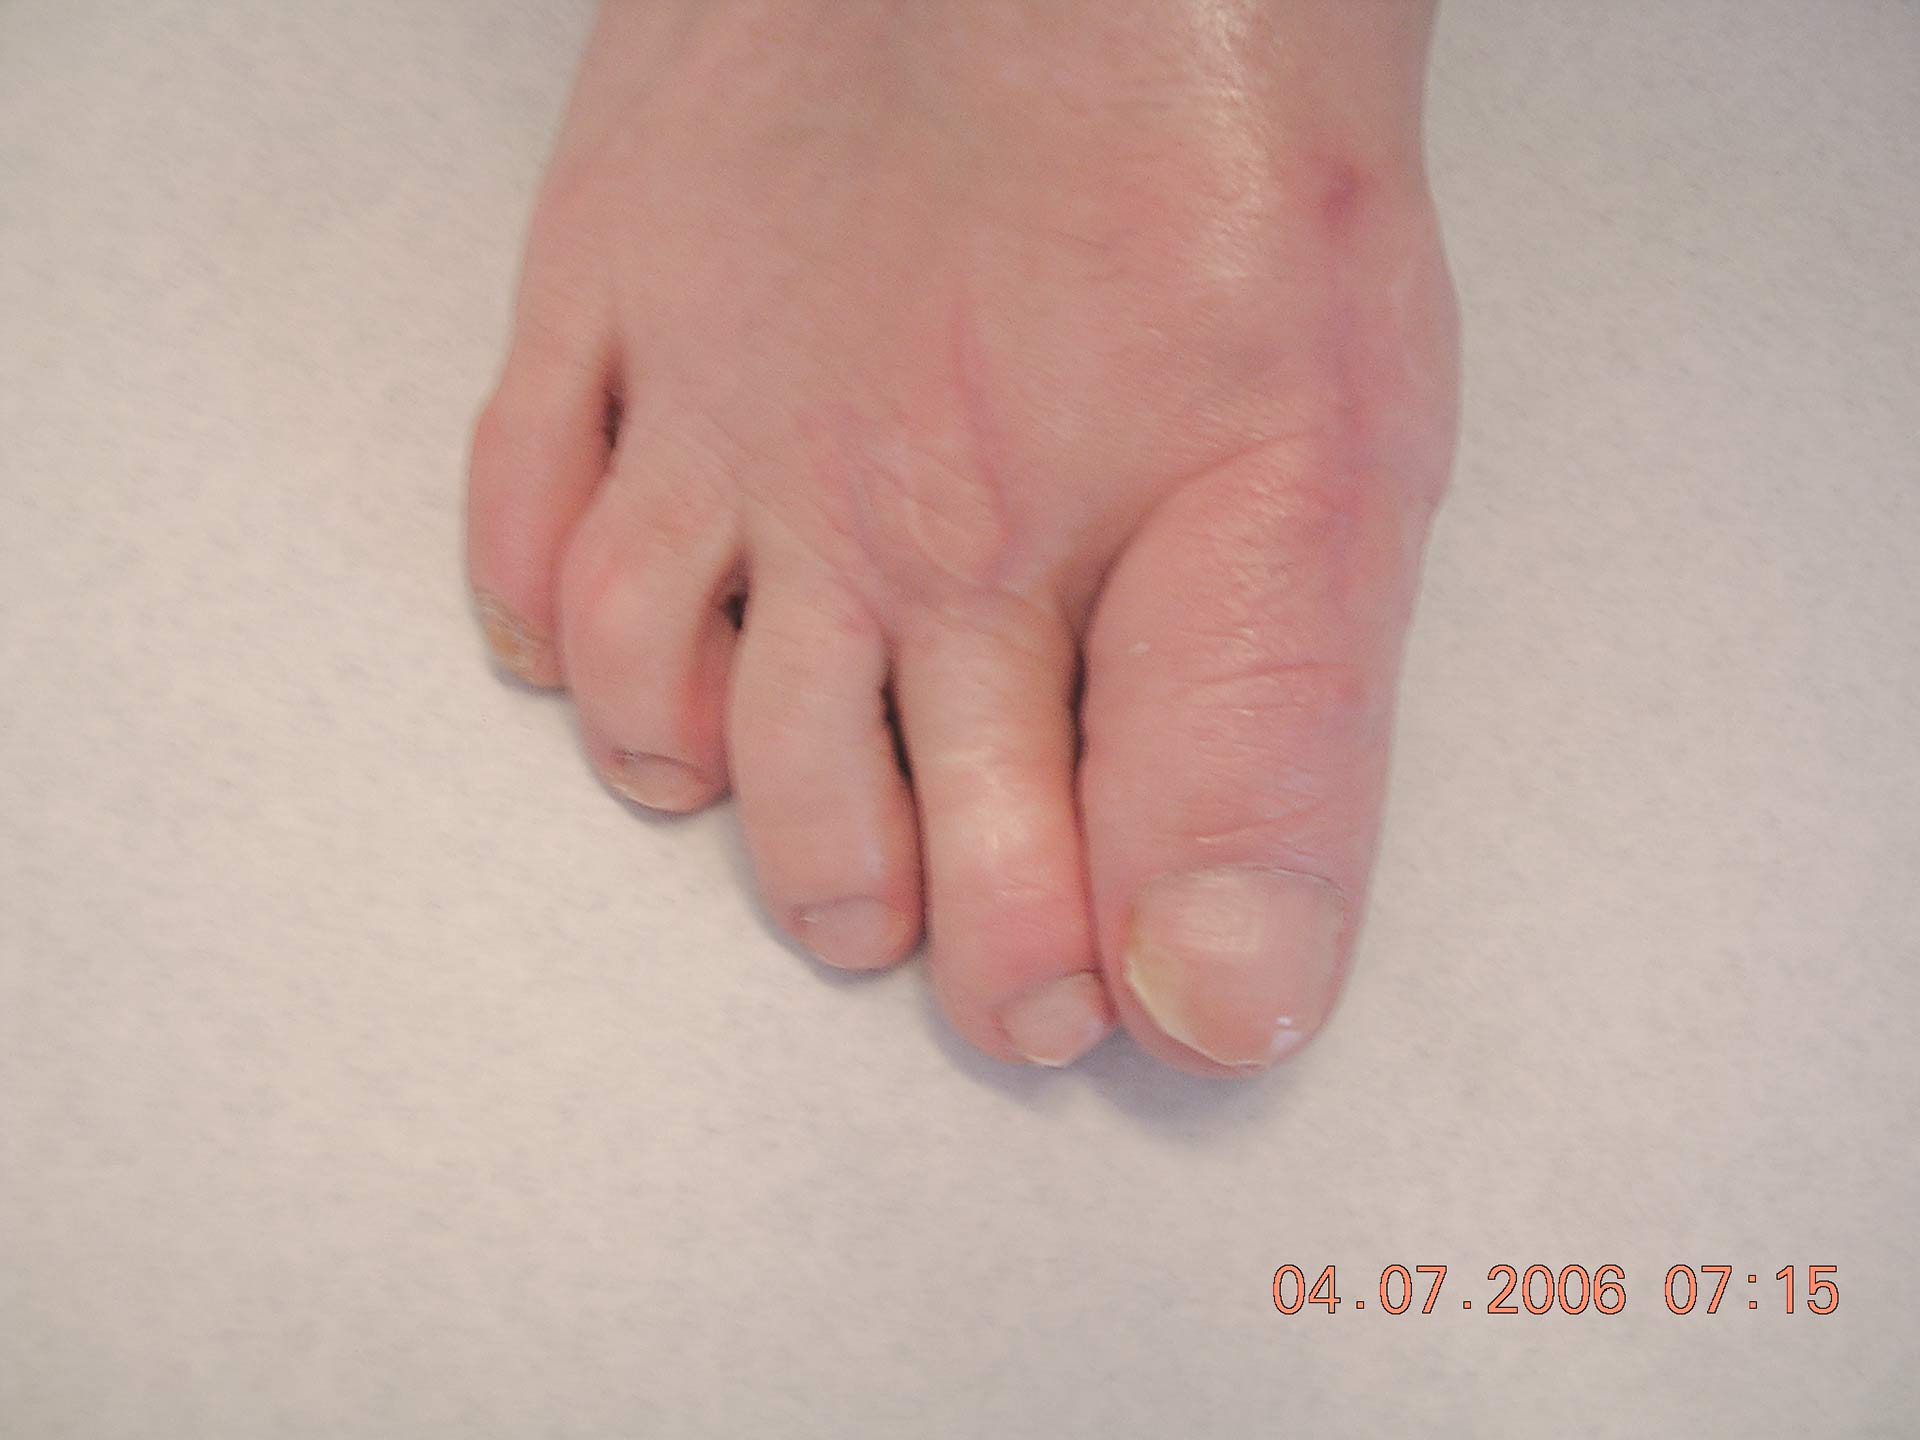 Maestro y Alejo Podología | Tratamiento quirúrgico de juanete con dedo por encima de segundo dedo (primer dedo supracutus) | Postoperatorio 1